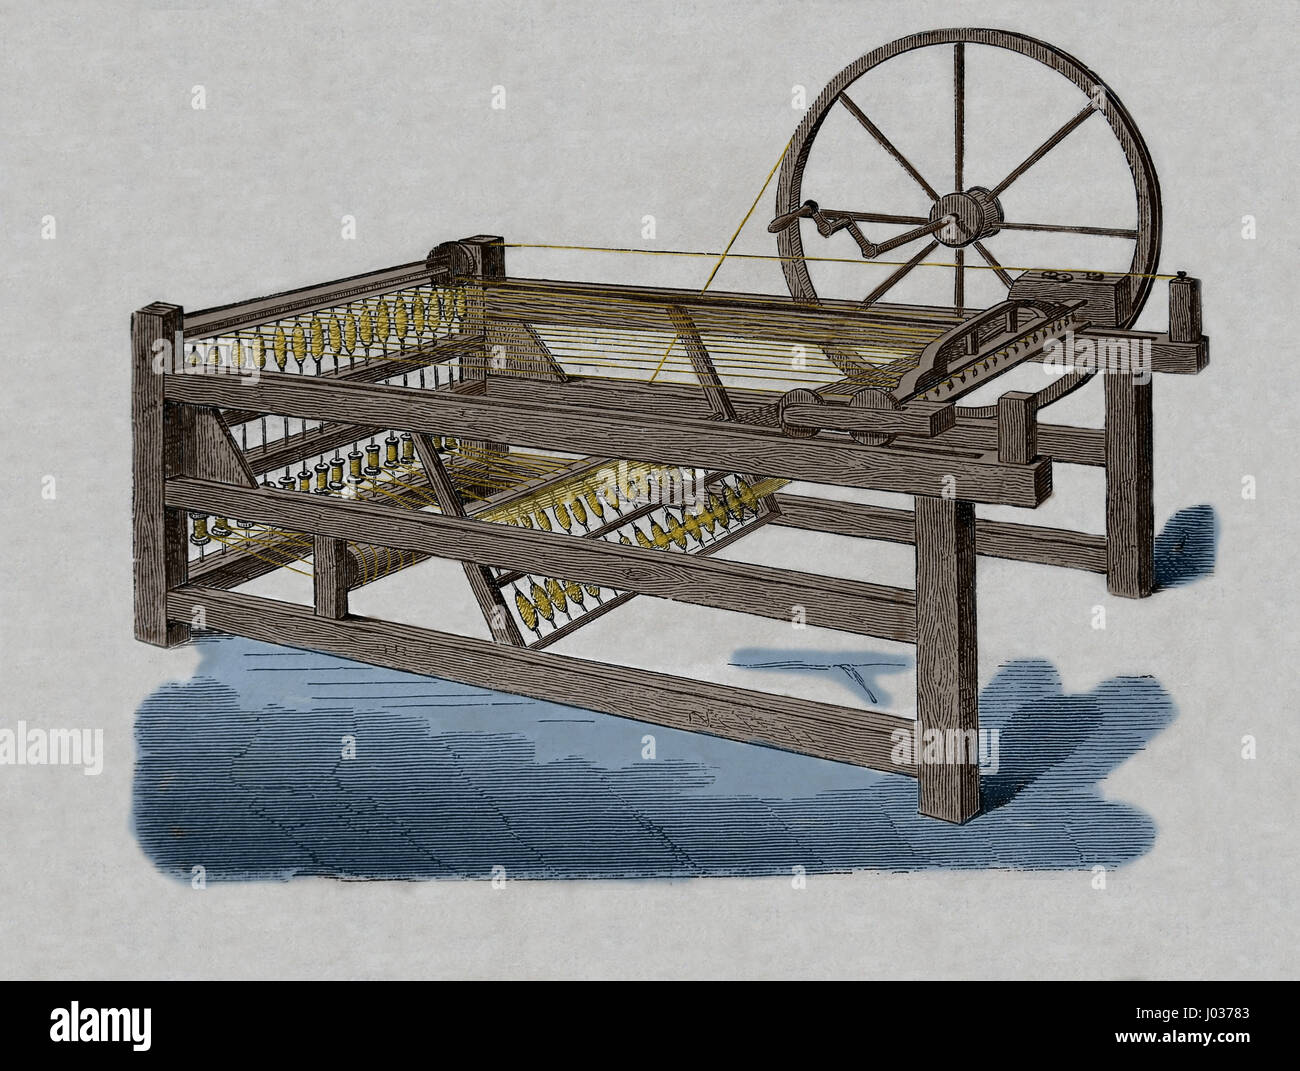 Revolución industrial. Hargreaves's spinning-Jenny, inventada en los 1760s. Grabado, nuestro siglo, 1883. Edición en español. Foto de stock